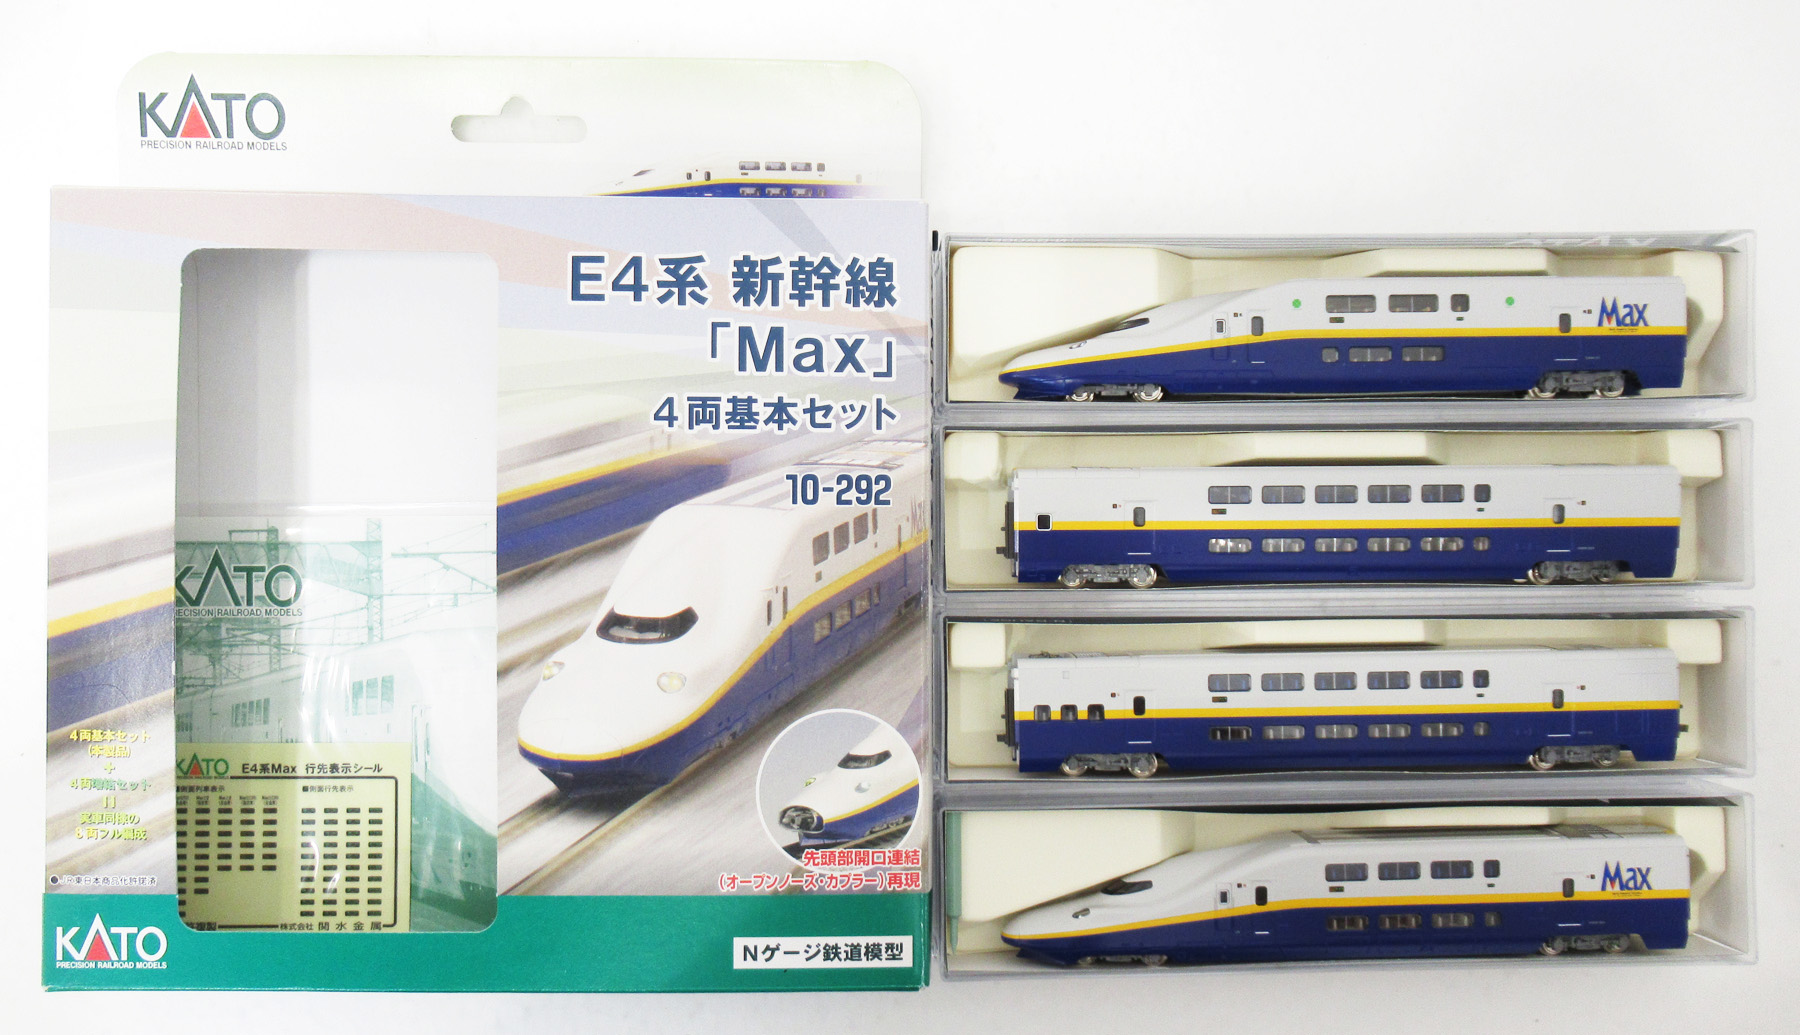 10-293 KATO E4系新幹線「Max」4両基本＋4両増結-garciotum.com